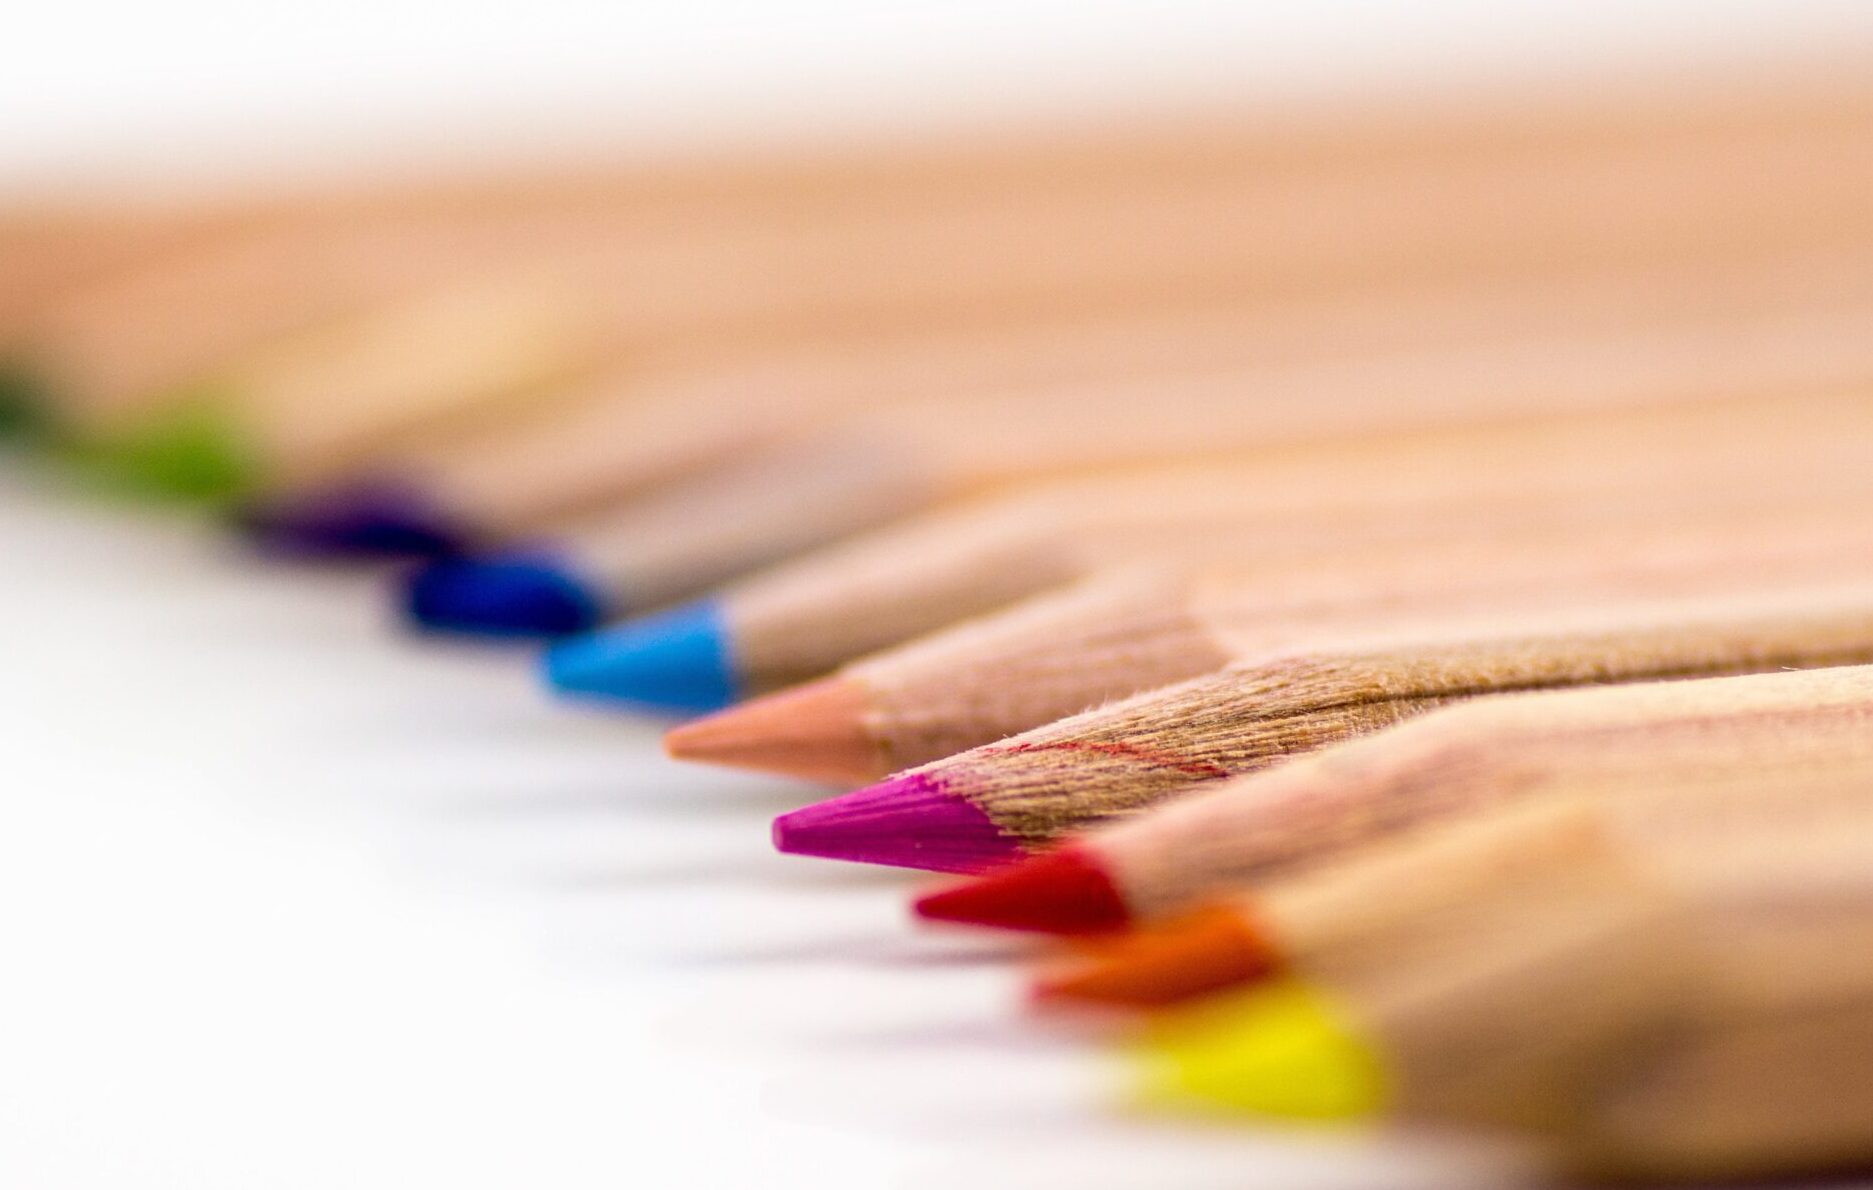 Et bilde av tegneblyanter i organisert rekkefølge etter farge.